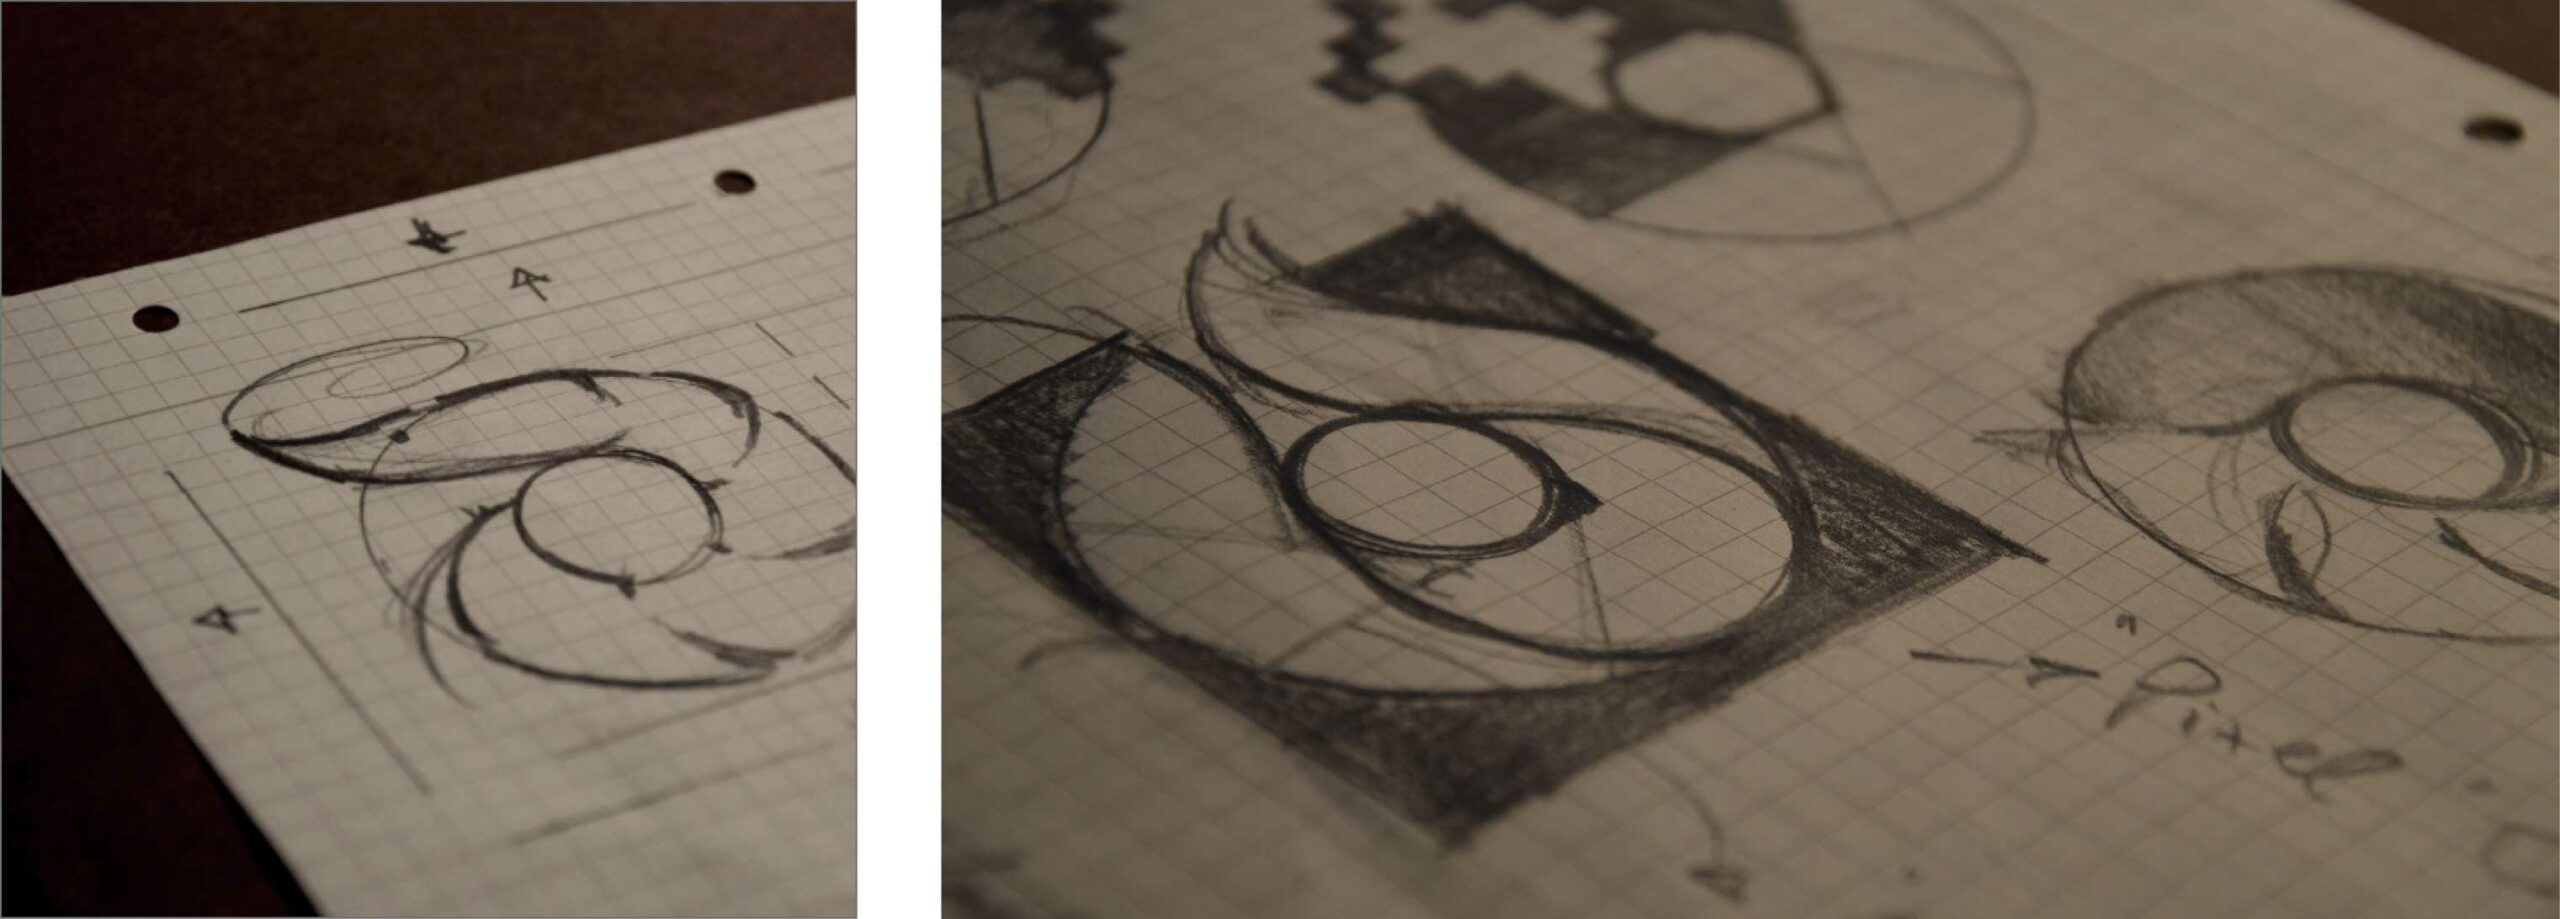 Bilder zeigen verschiedene Bleistift Skizzen zum Entwurf des Logos Culinary Pixel